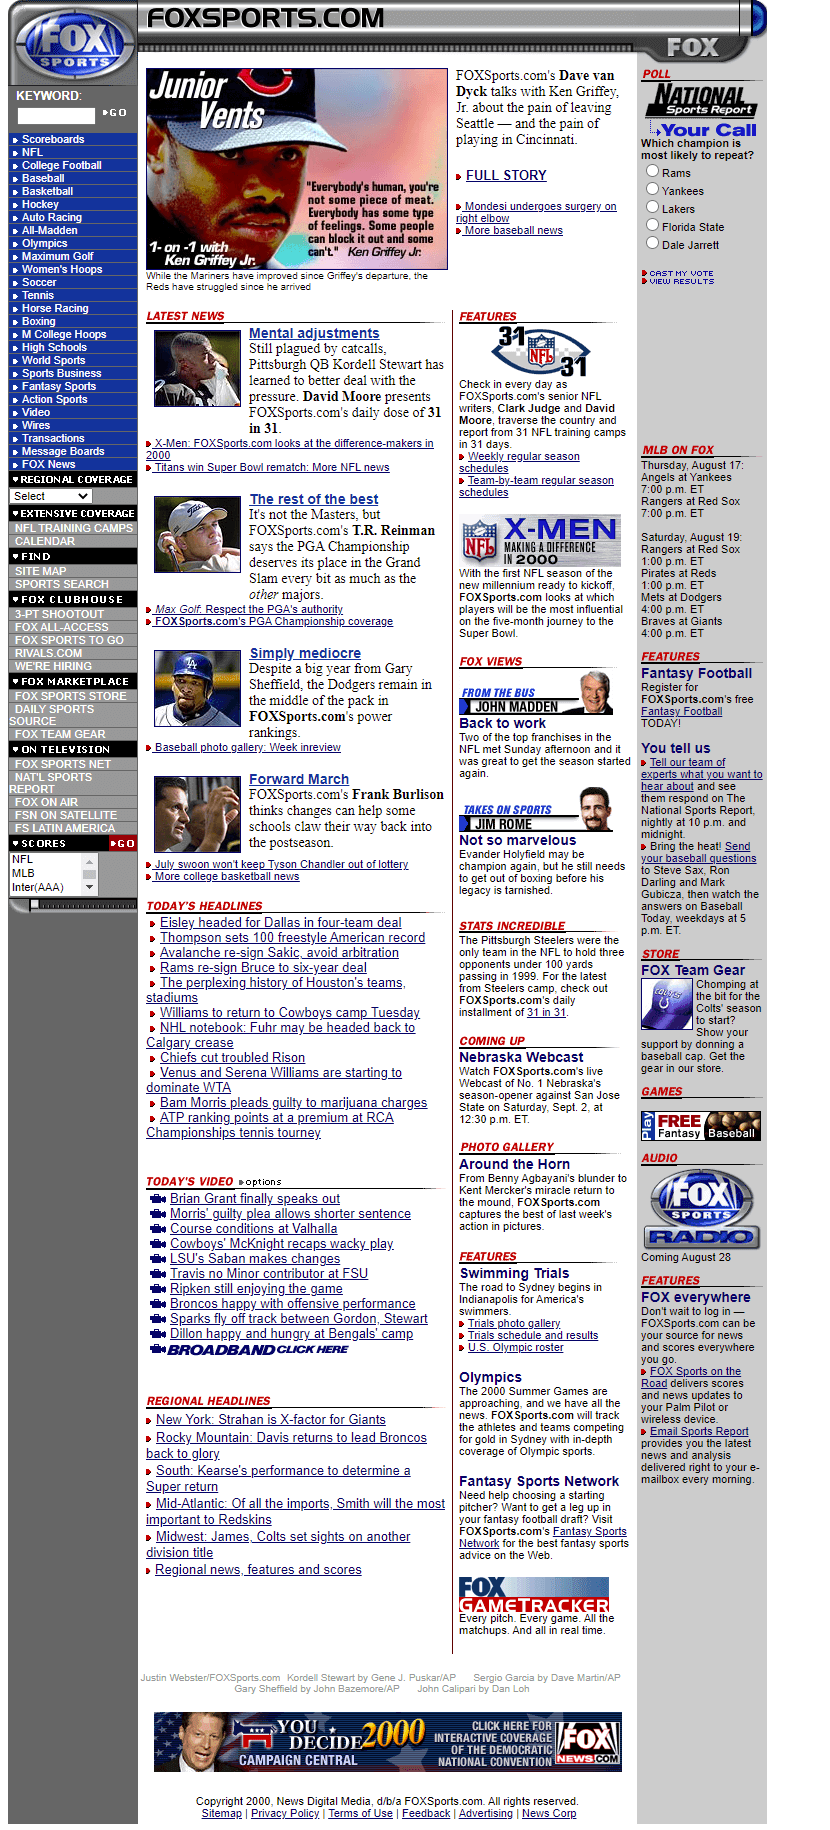 FOX Sports website in 2000